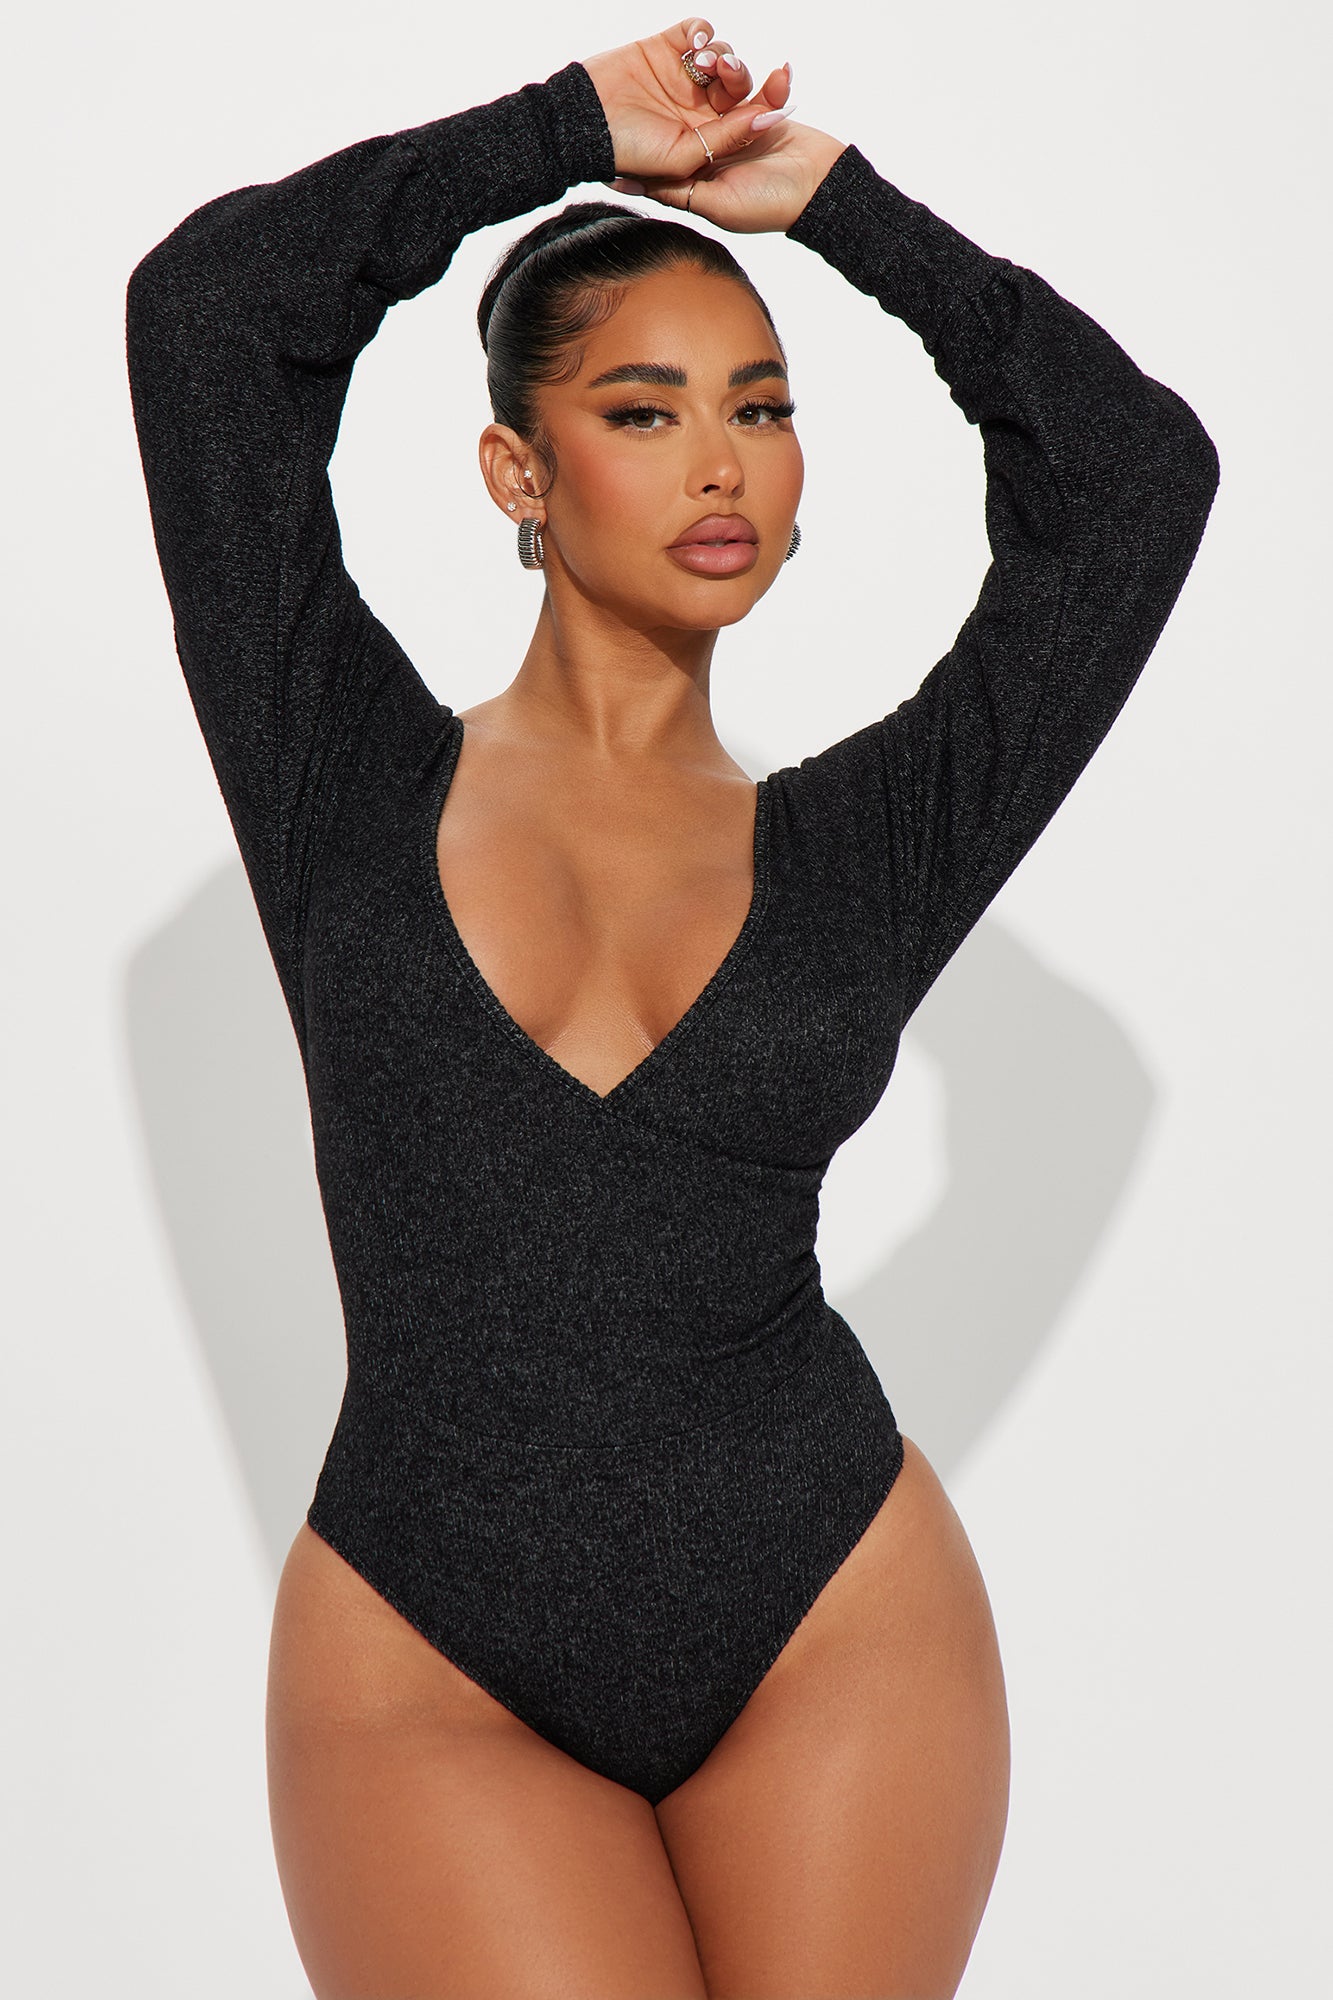 Jenesis Bustier Bodysuit - Black, Fashion Nova, Bodysuits